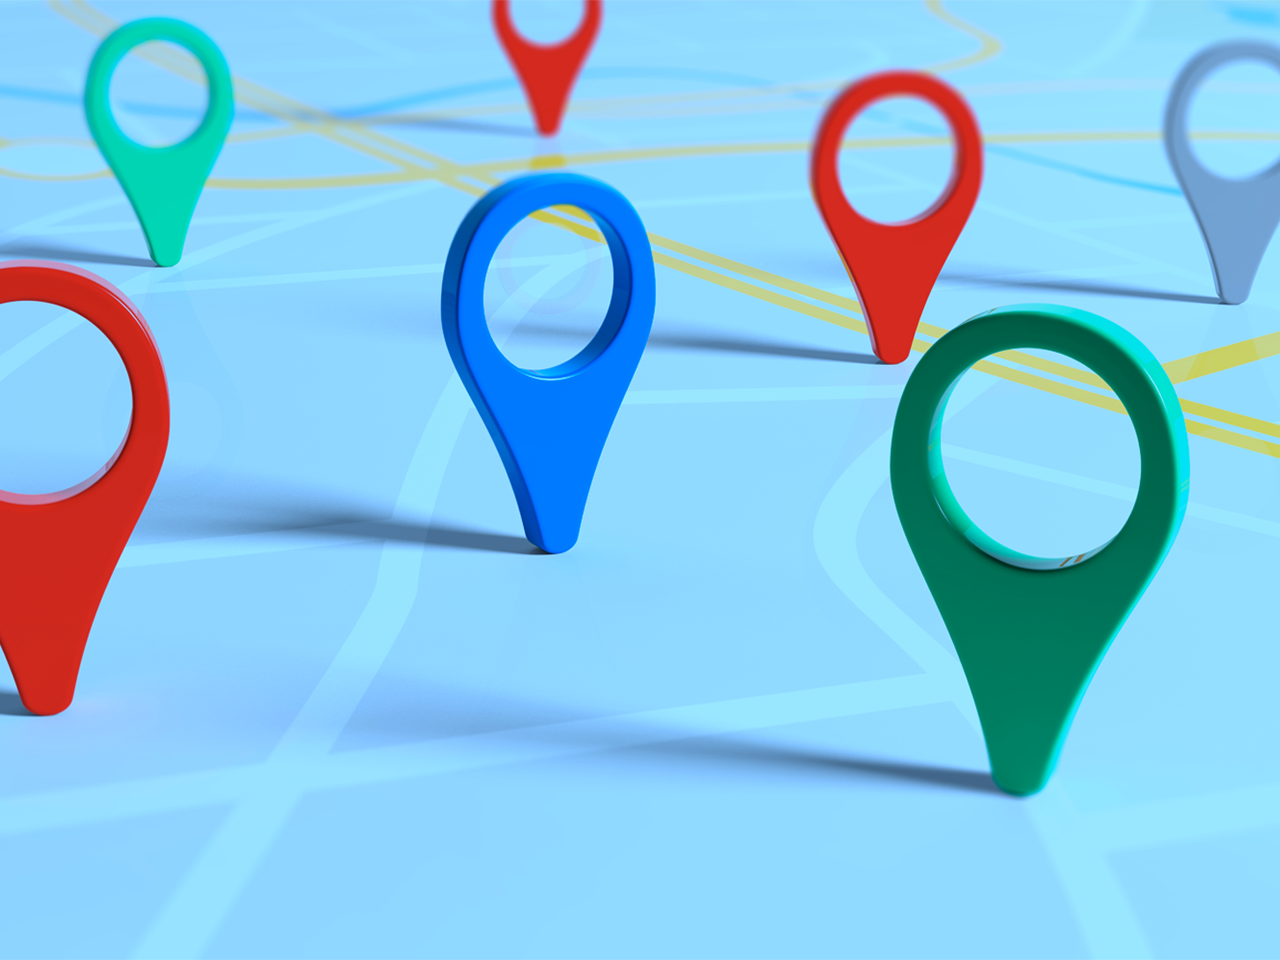 La nuova funzionalità "Match" di Google Maps